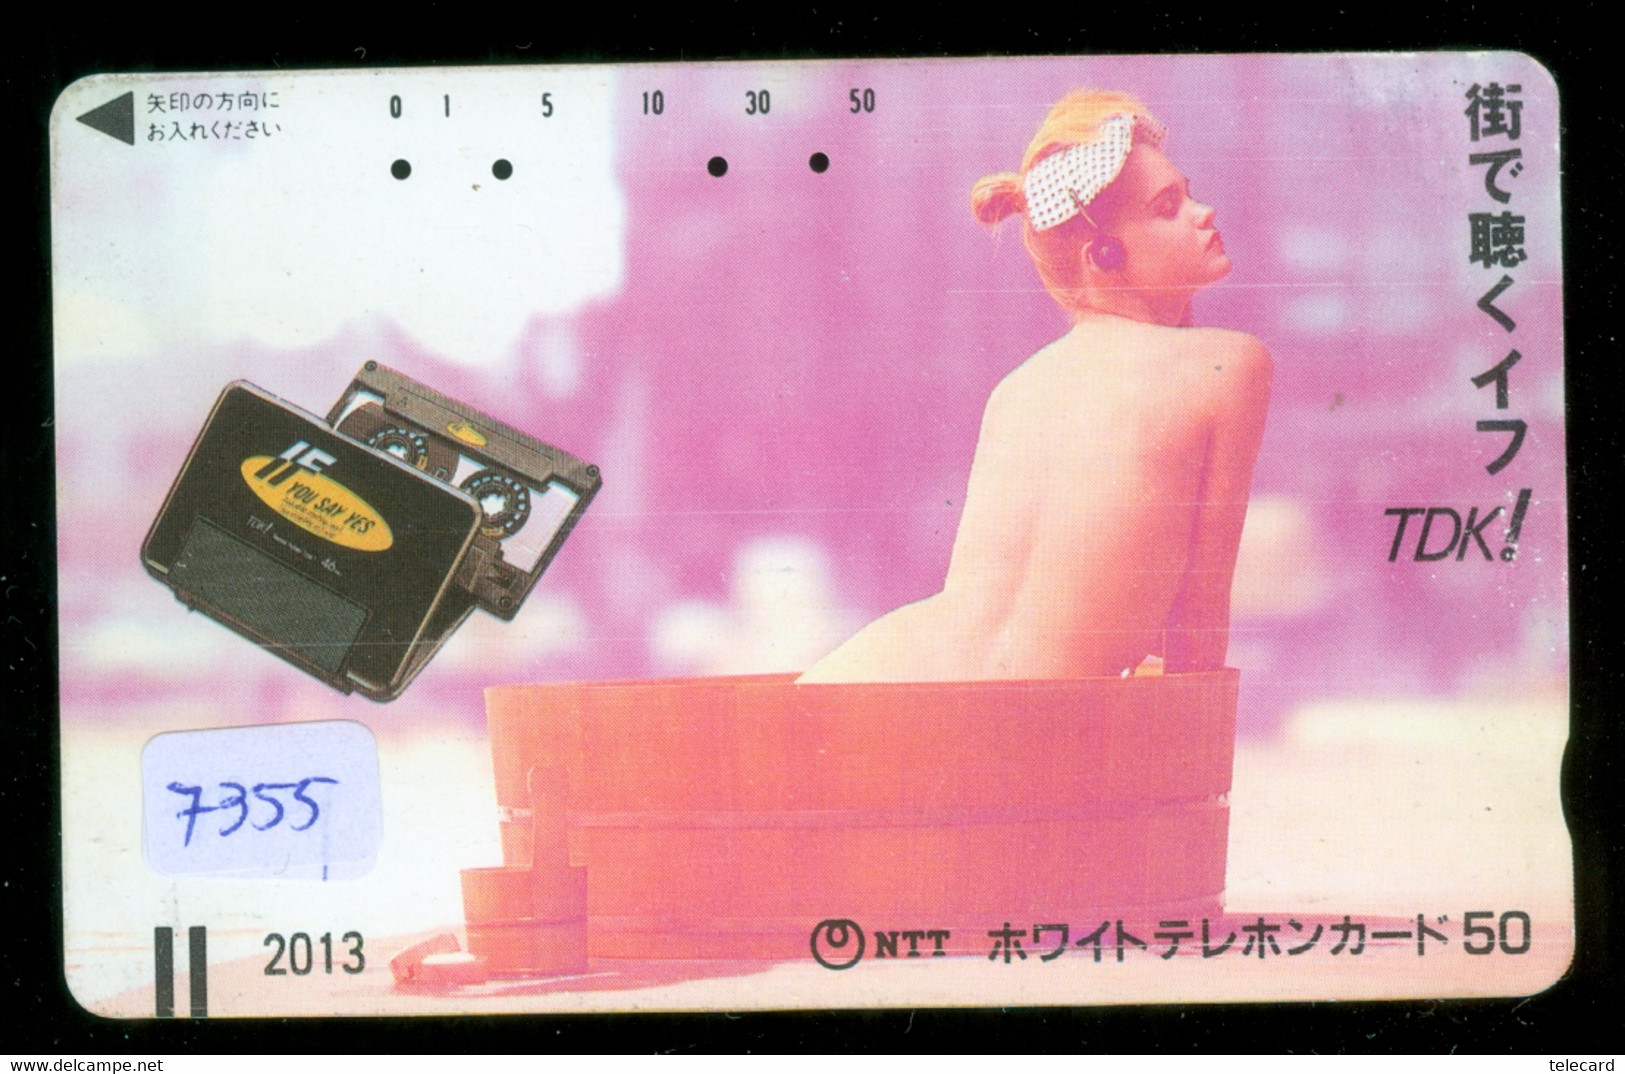 Télécarte Japon FRONT BAR 110-011 * FEMME EROTIQUE (7355) BATH * PHONECARD JAPAN * TELEFONKARTE *  BATHCLOTHES LINGERIE - Fashion